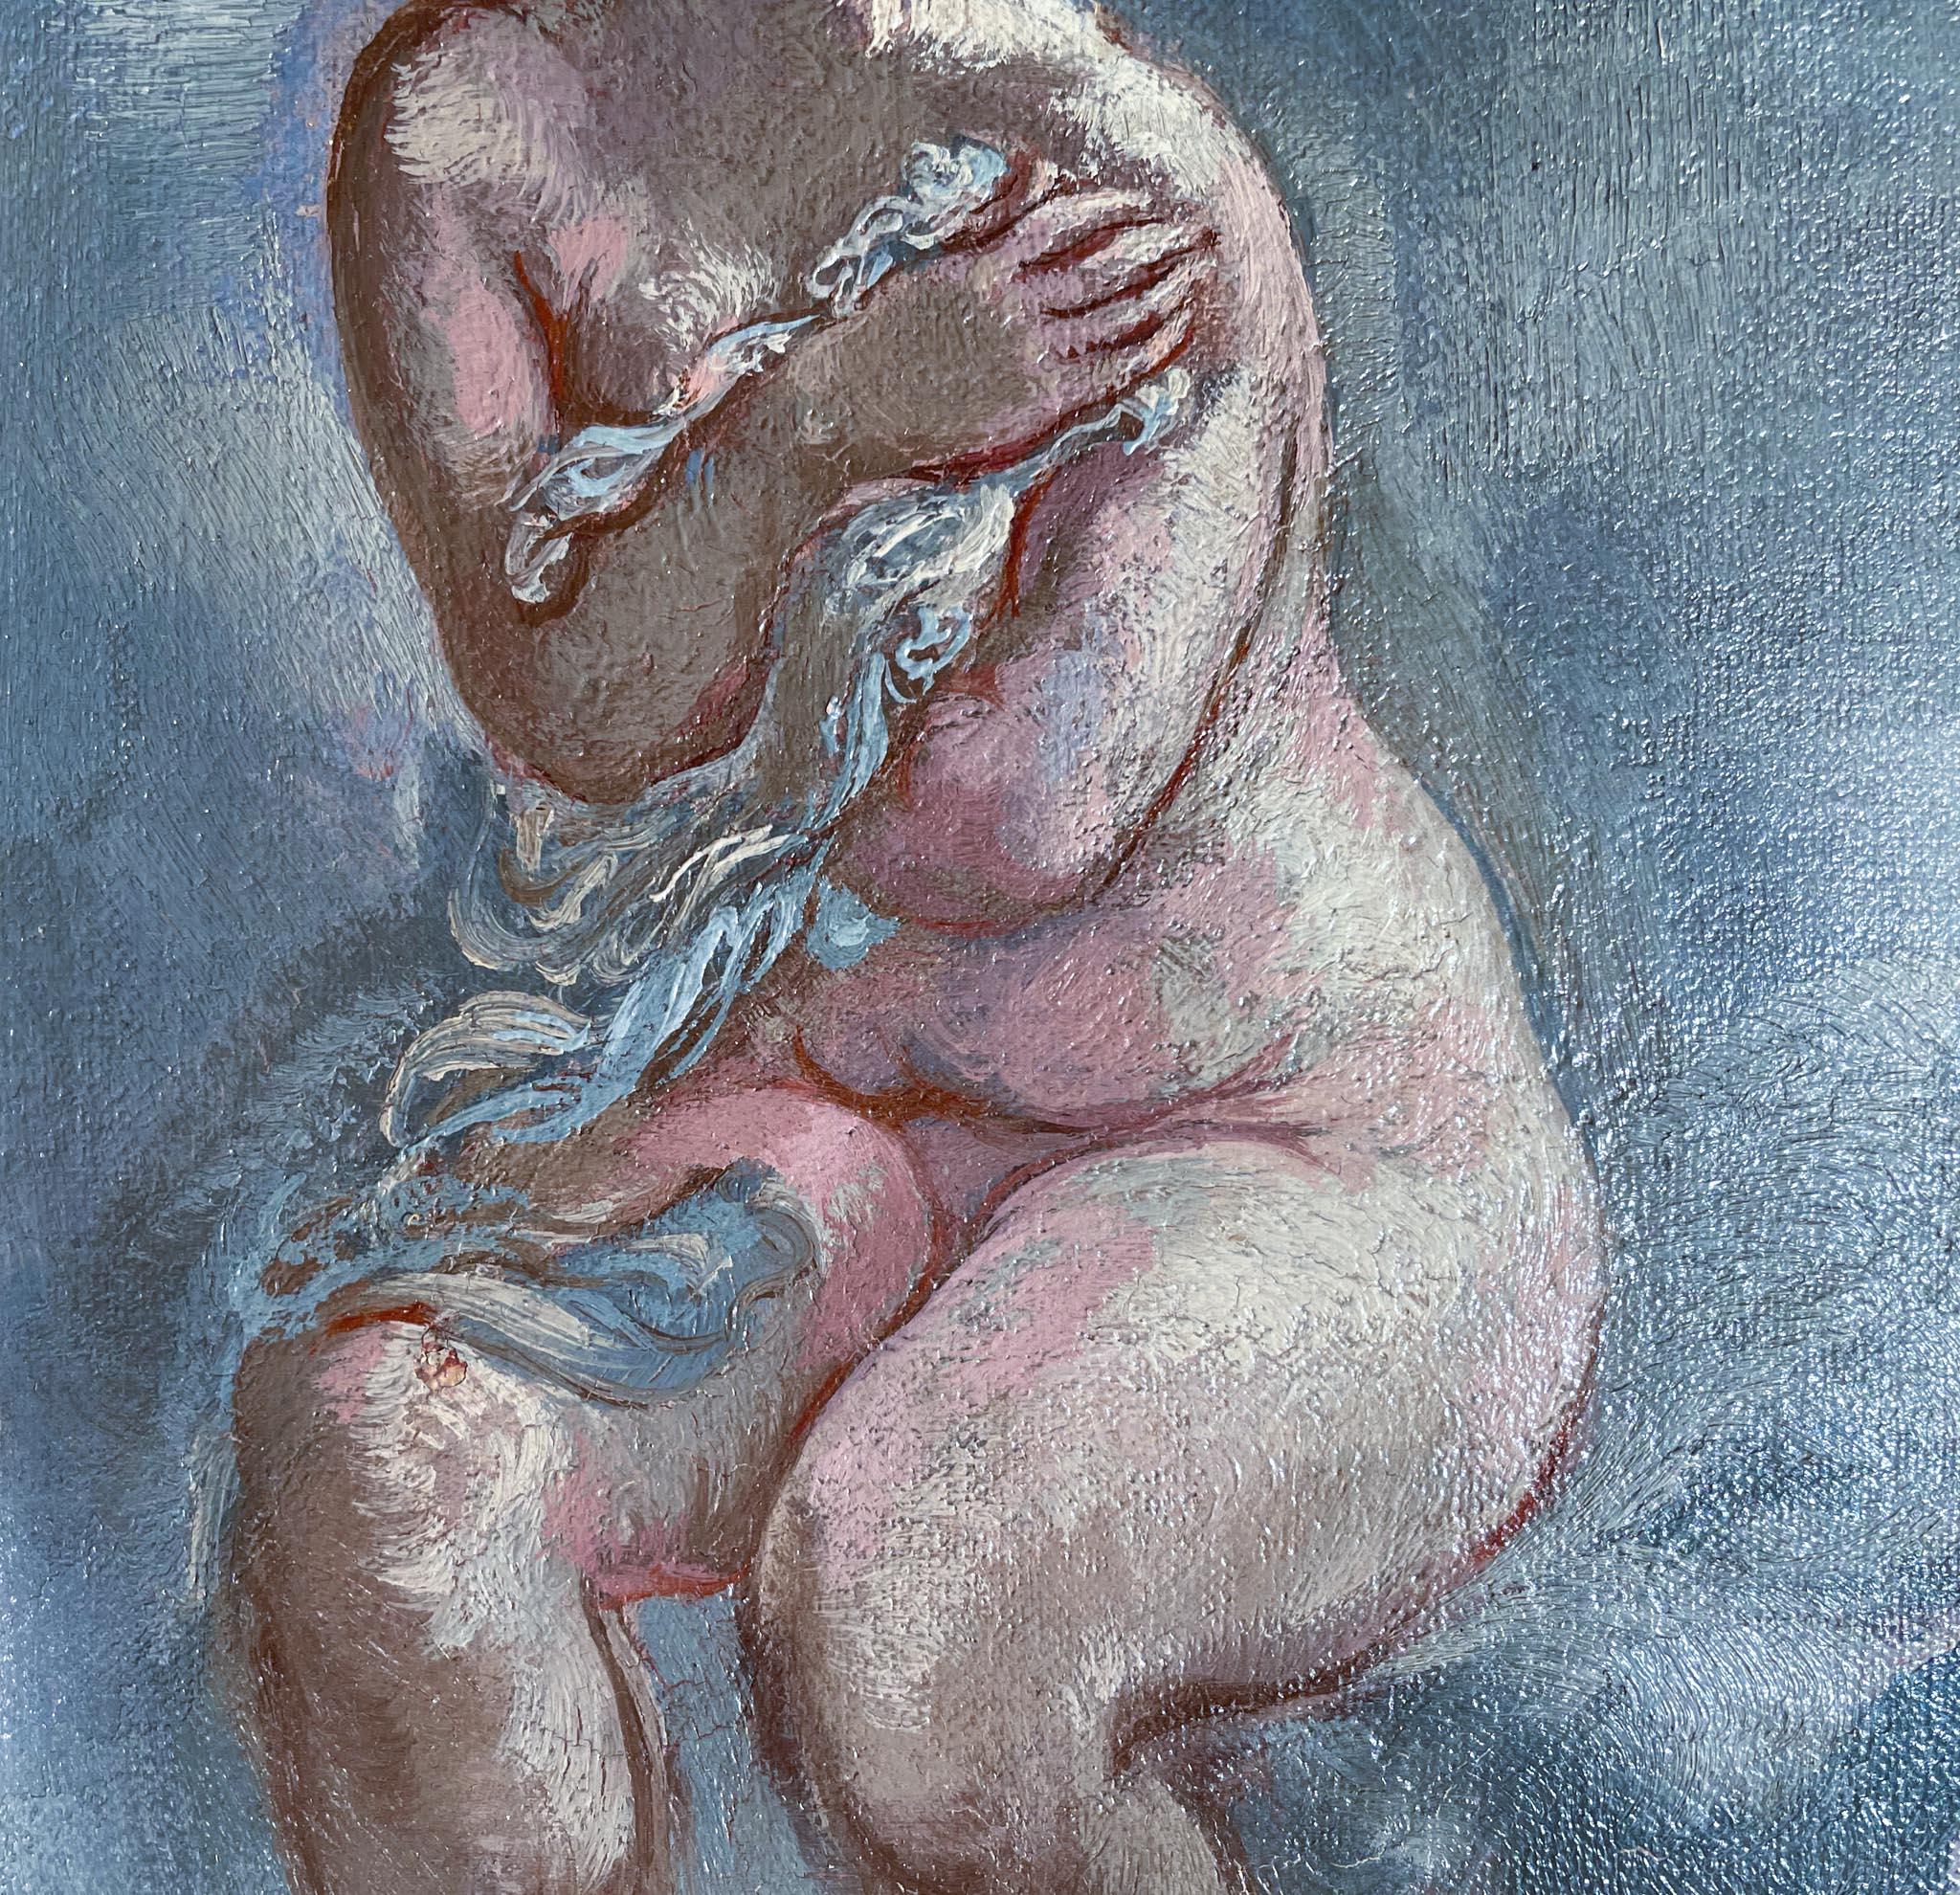 Sitzender Akt von George Grosz (1893-1959)
Öl auf Leinwand
9 ½ x 5 ½ Zoll ungerahmt (24,13 x 13,97 cm)
15 x 12 Zoll gerahmt (38,1 x 30,48 cm)
Signiert unten rechts

Beschreibung:
In diesem Werk stellt George Grosz eine nackte Frau dar, die sich mit